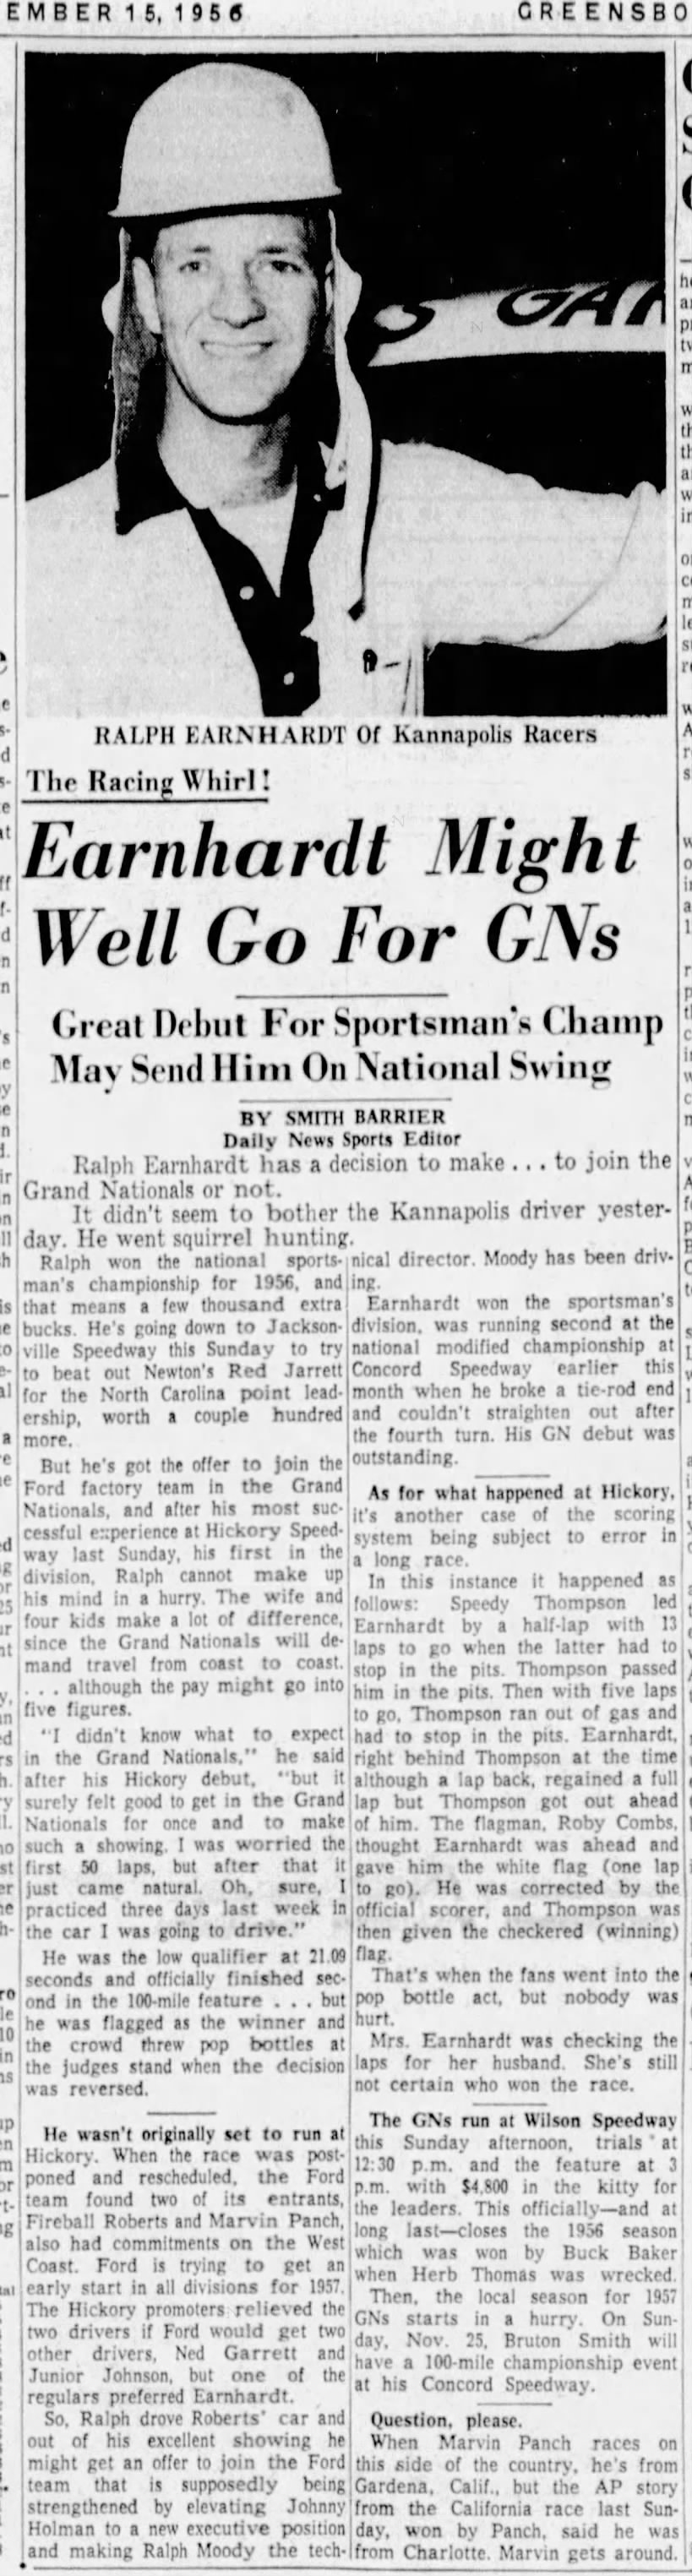 1956 Earnhardt Has Offer For Grand National